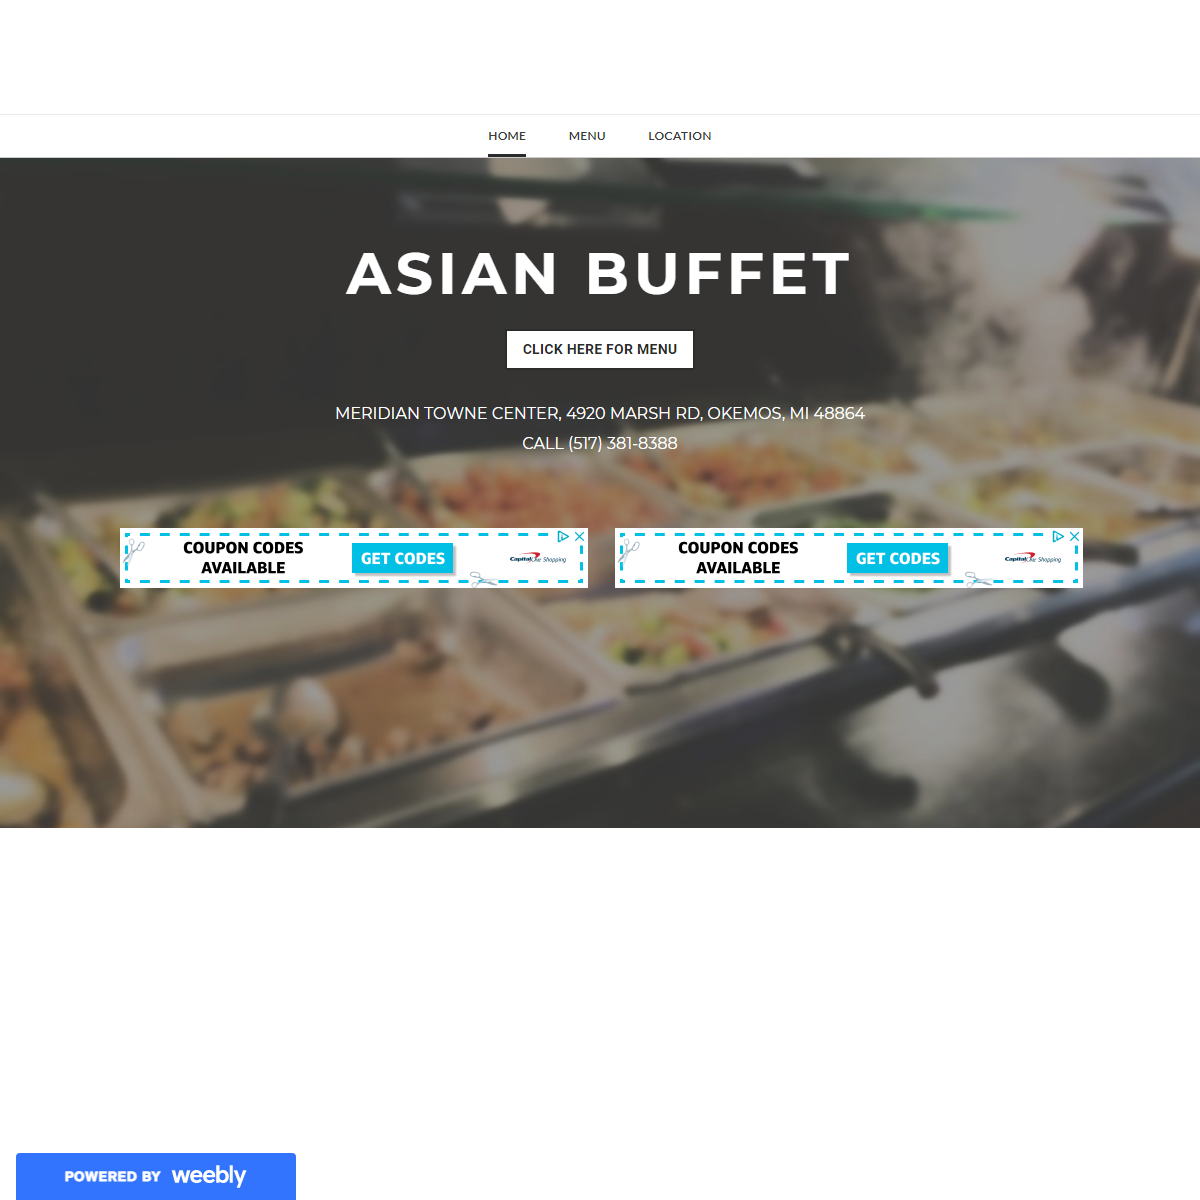 Asian Buffet - Home